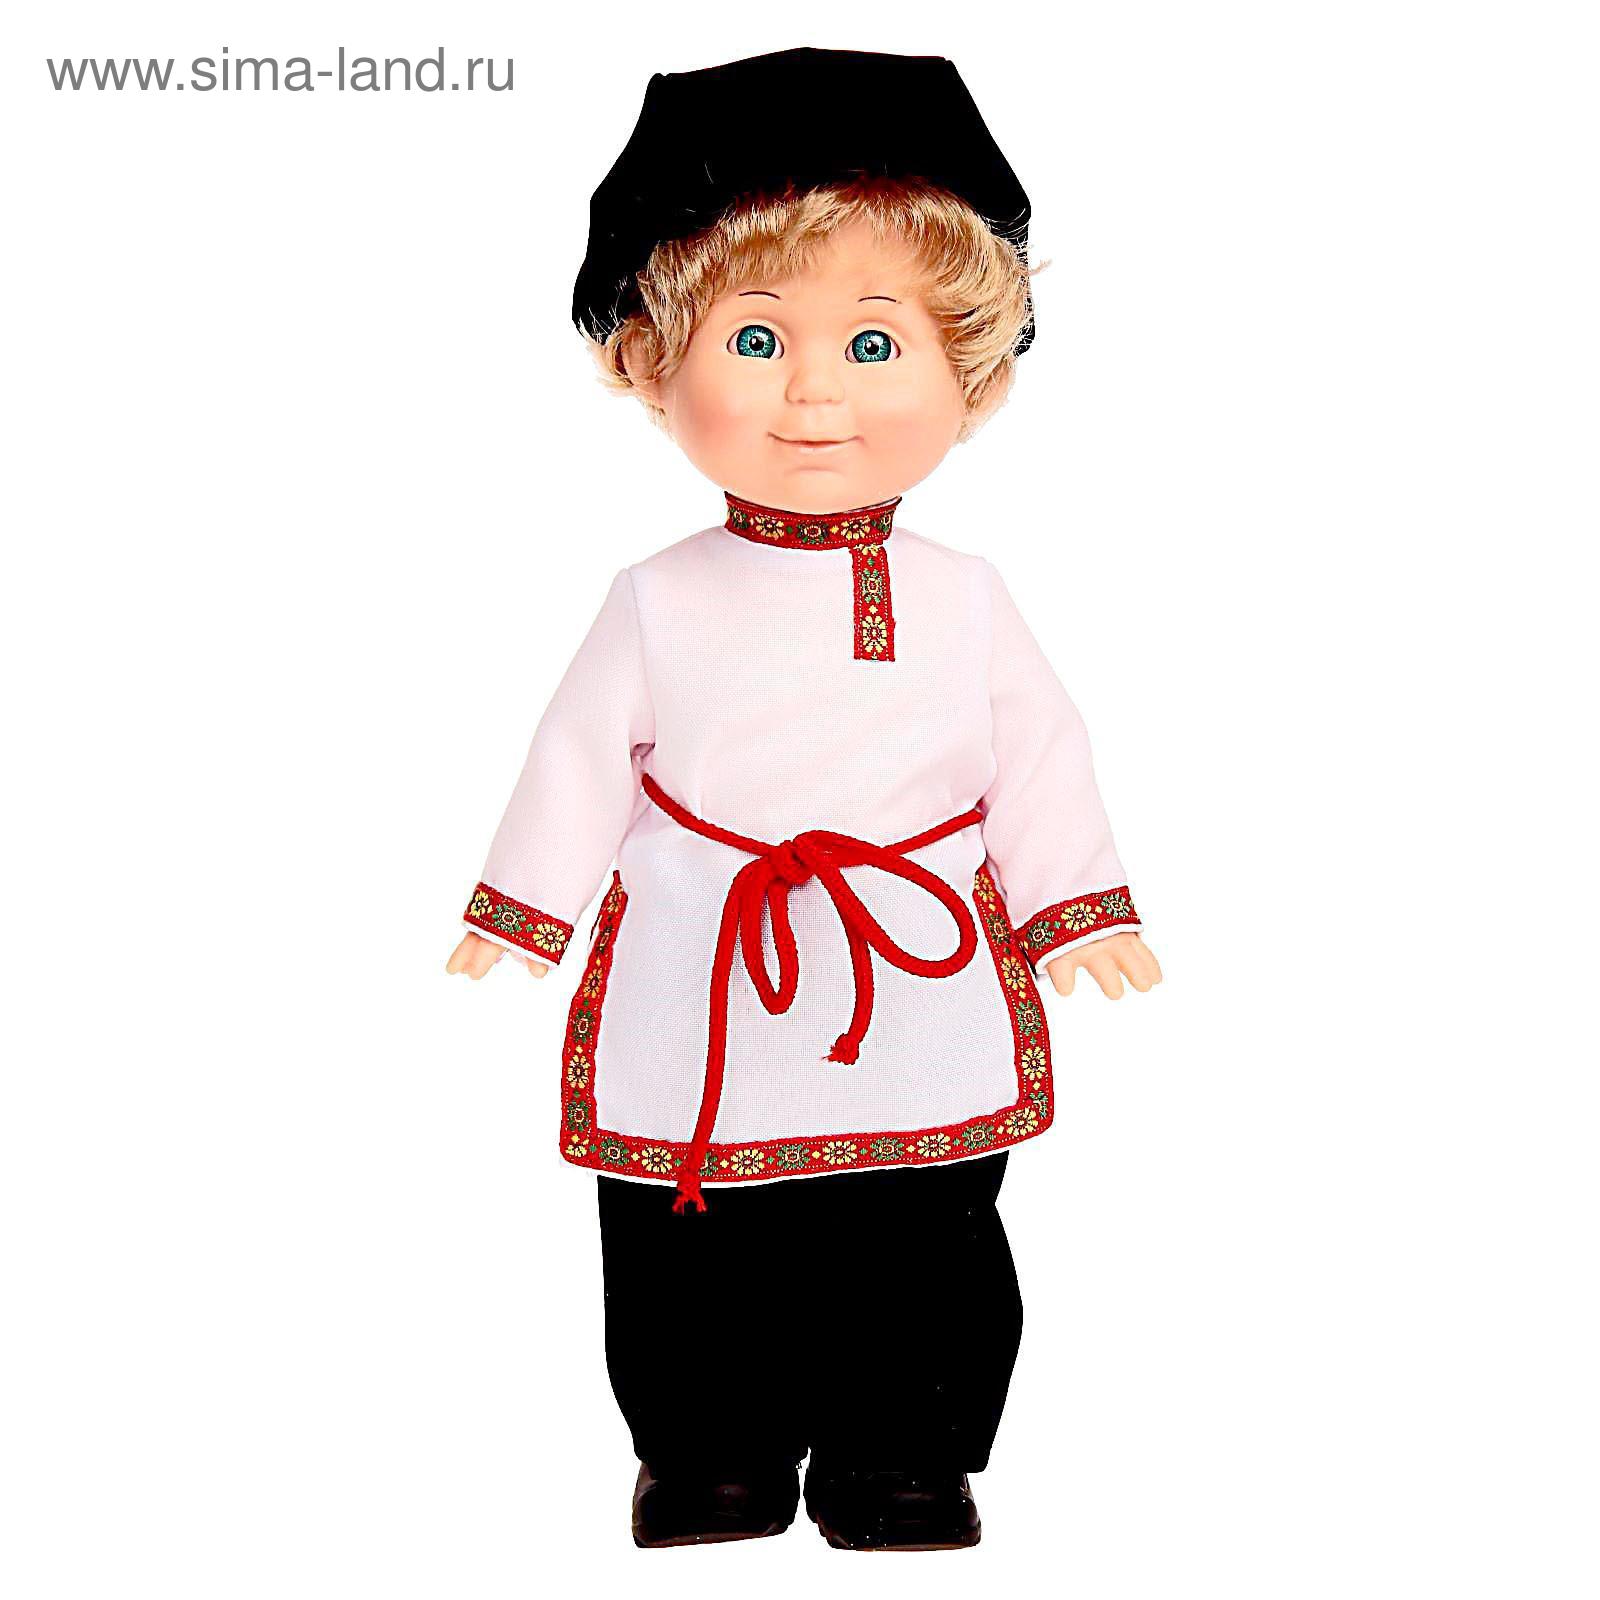 Кукла в национальной одежде. Кукла в русском национальном костюме. Кукла в национальном наряде. Кукла мальчик в русском народном костюме.